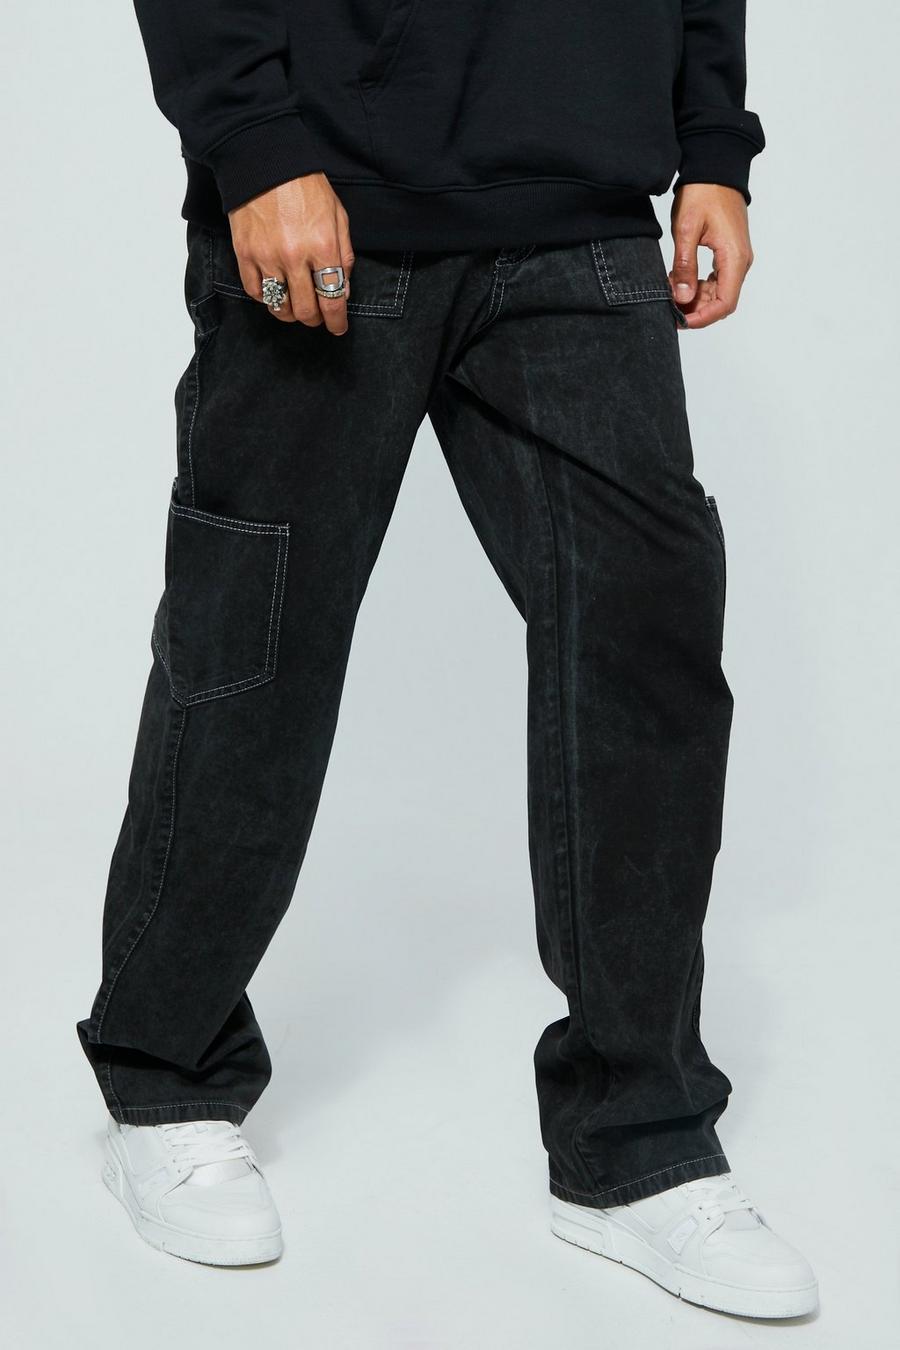 שחור מכנסי דגמ"ח משוחררים ומשופשפים בסגנון נגרים, לגברים גבוהים  image number 1